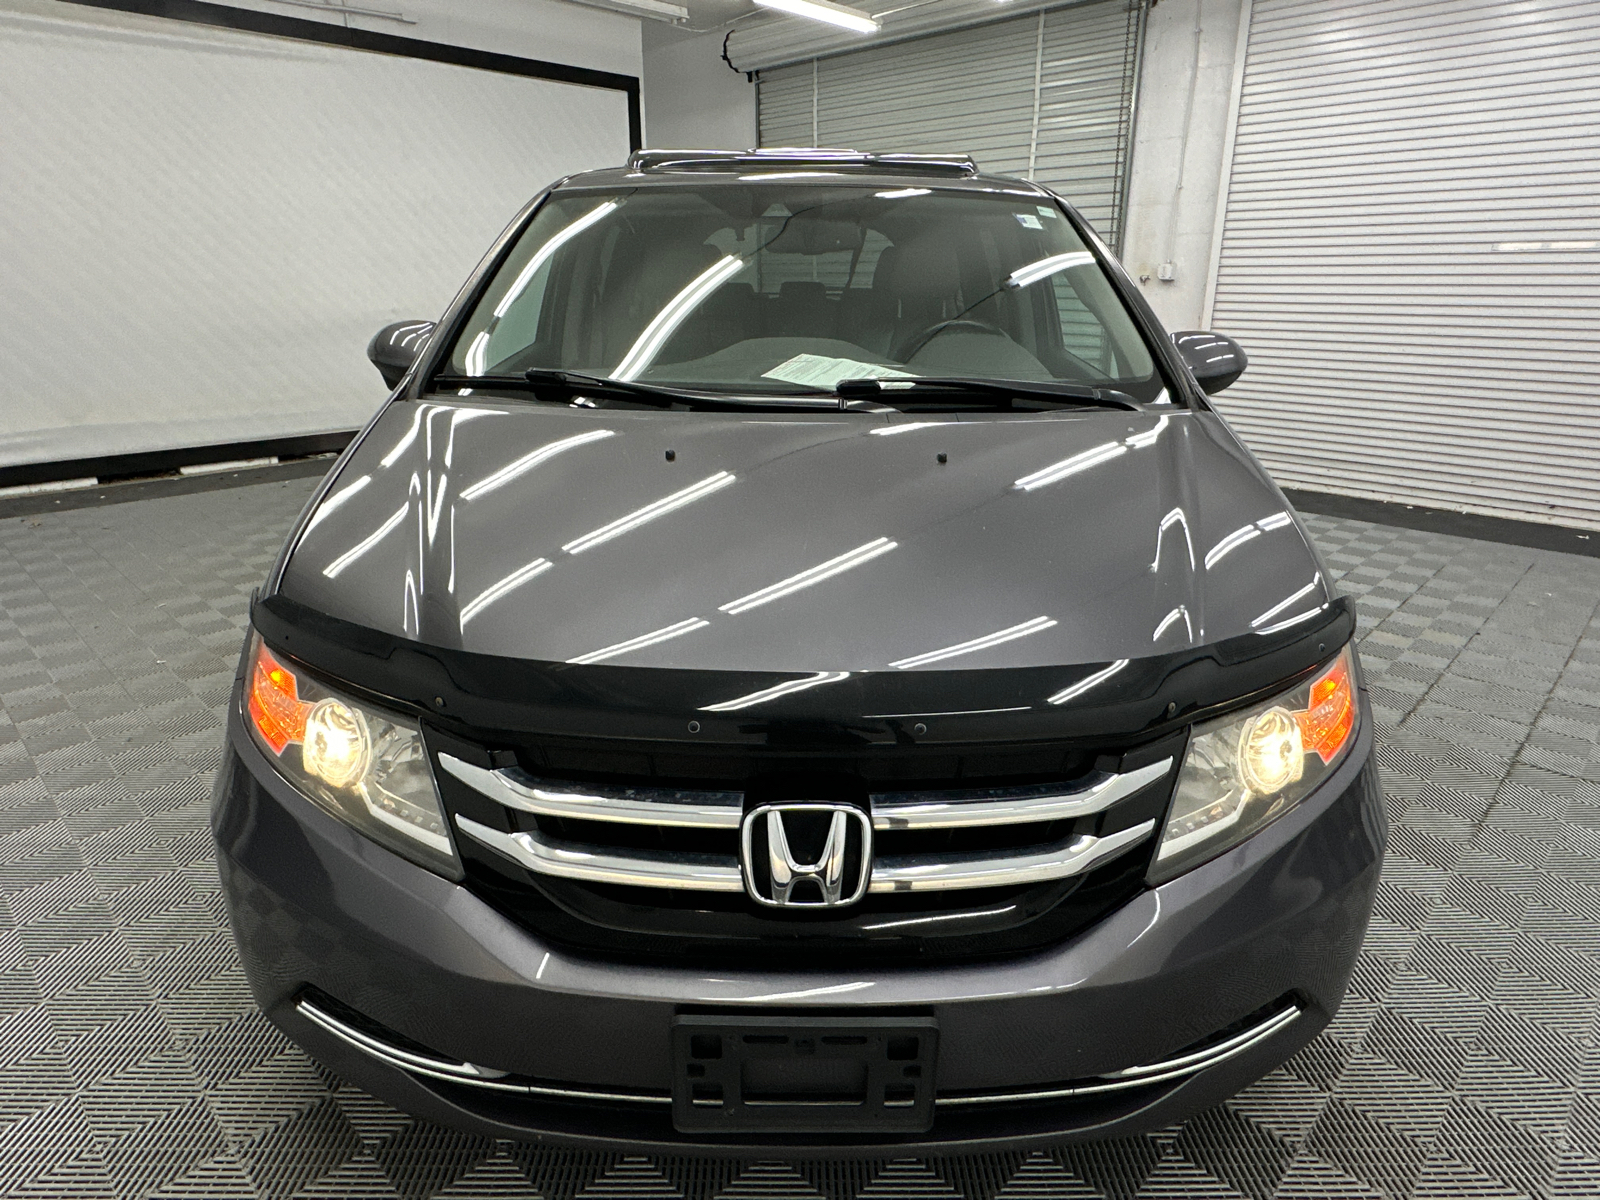 2015 Honda Odyssey EX-L 8